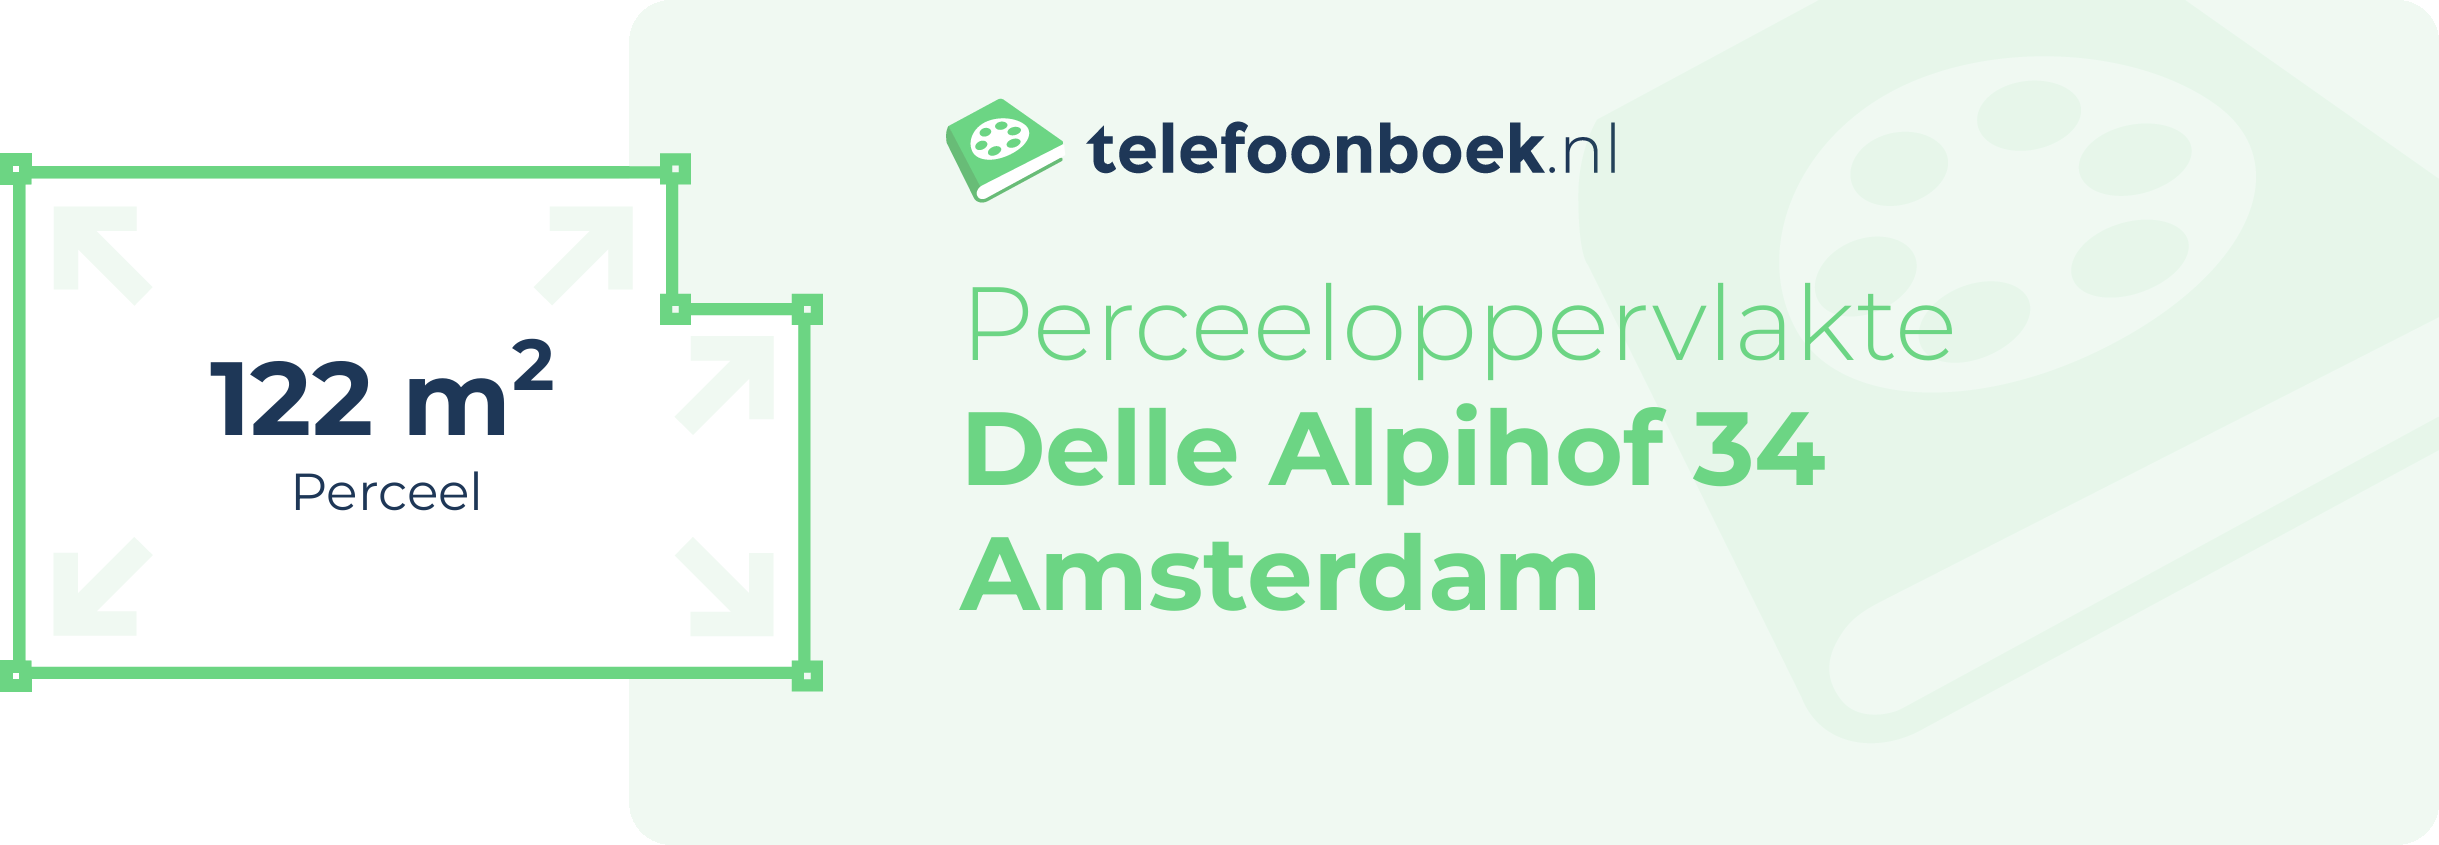 Perceeloppervlakte Delle Alpihof 34 Amsterdam